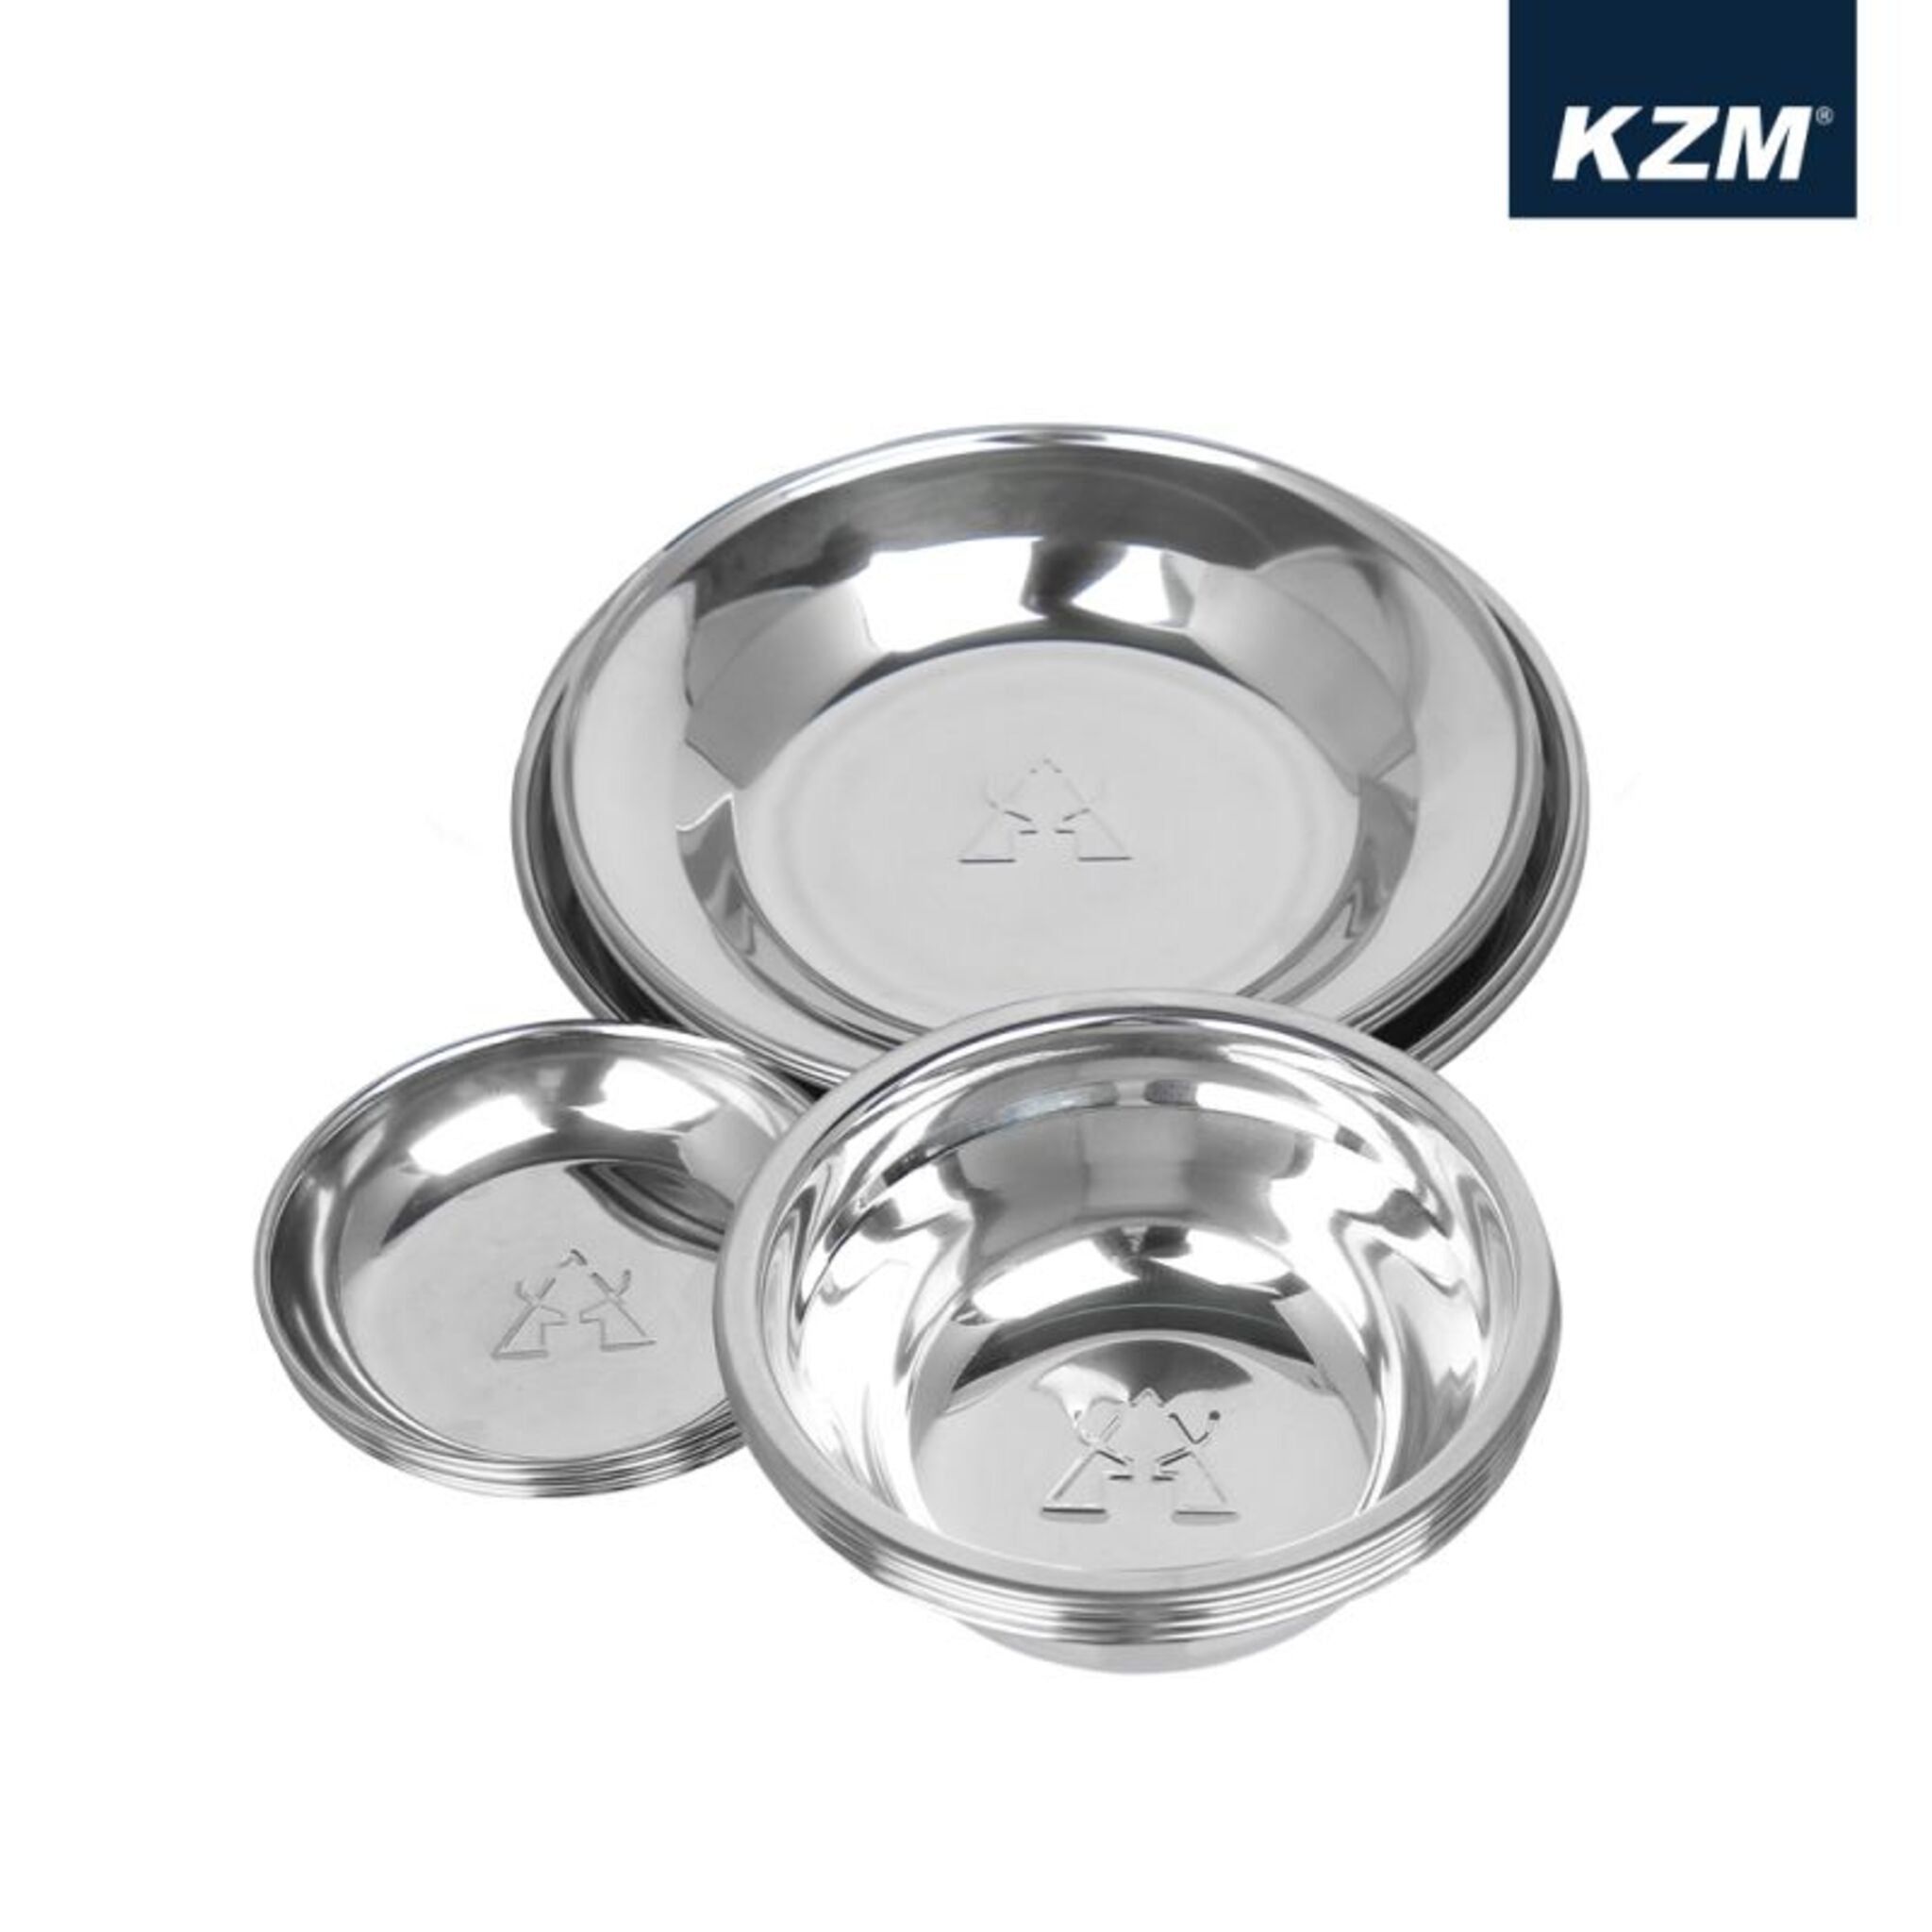 KZM 彩繪民族風不鏽鋼碗盤組 15P K7T3K001